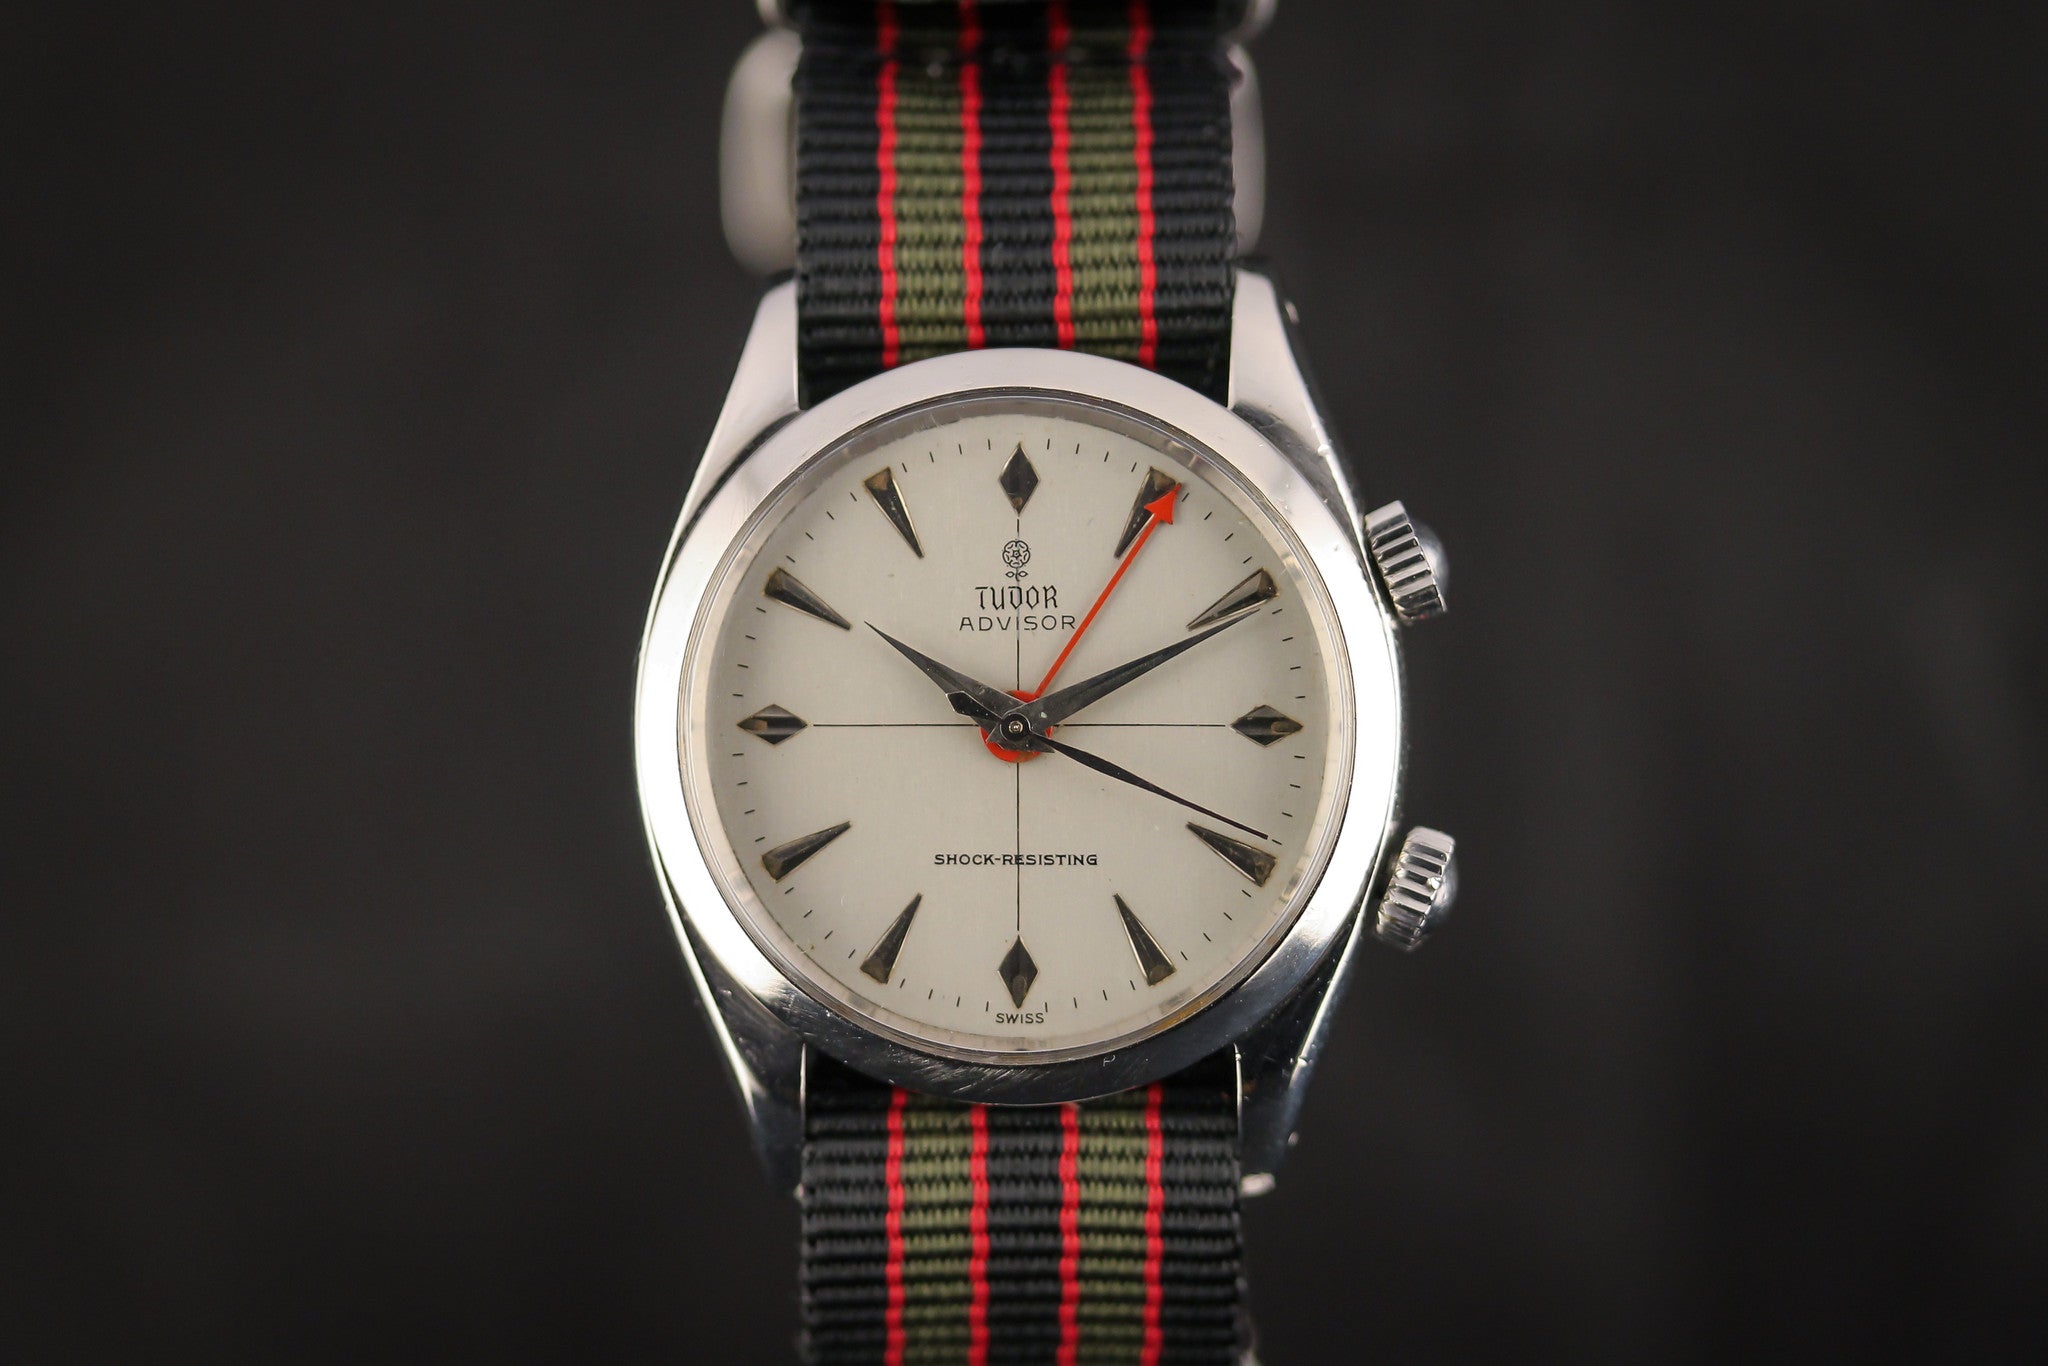 Pre-owned Tudor Advisor 7926 | Swiss Watch Club – Swiss Watch Club